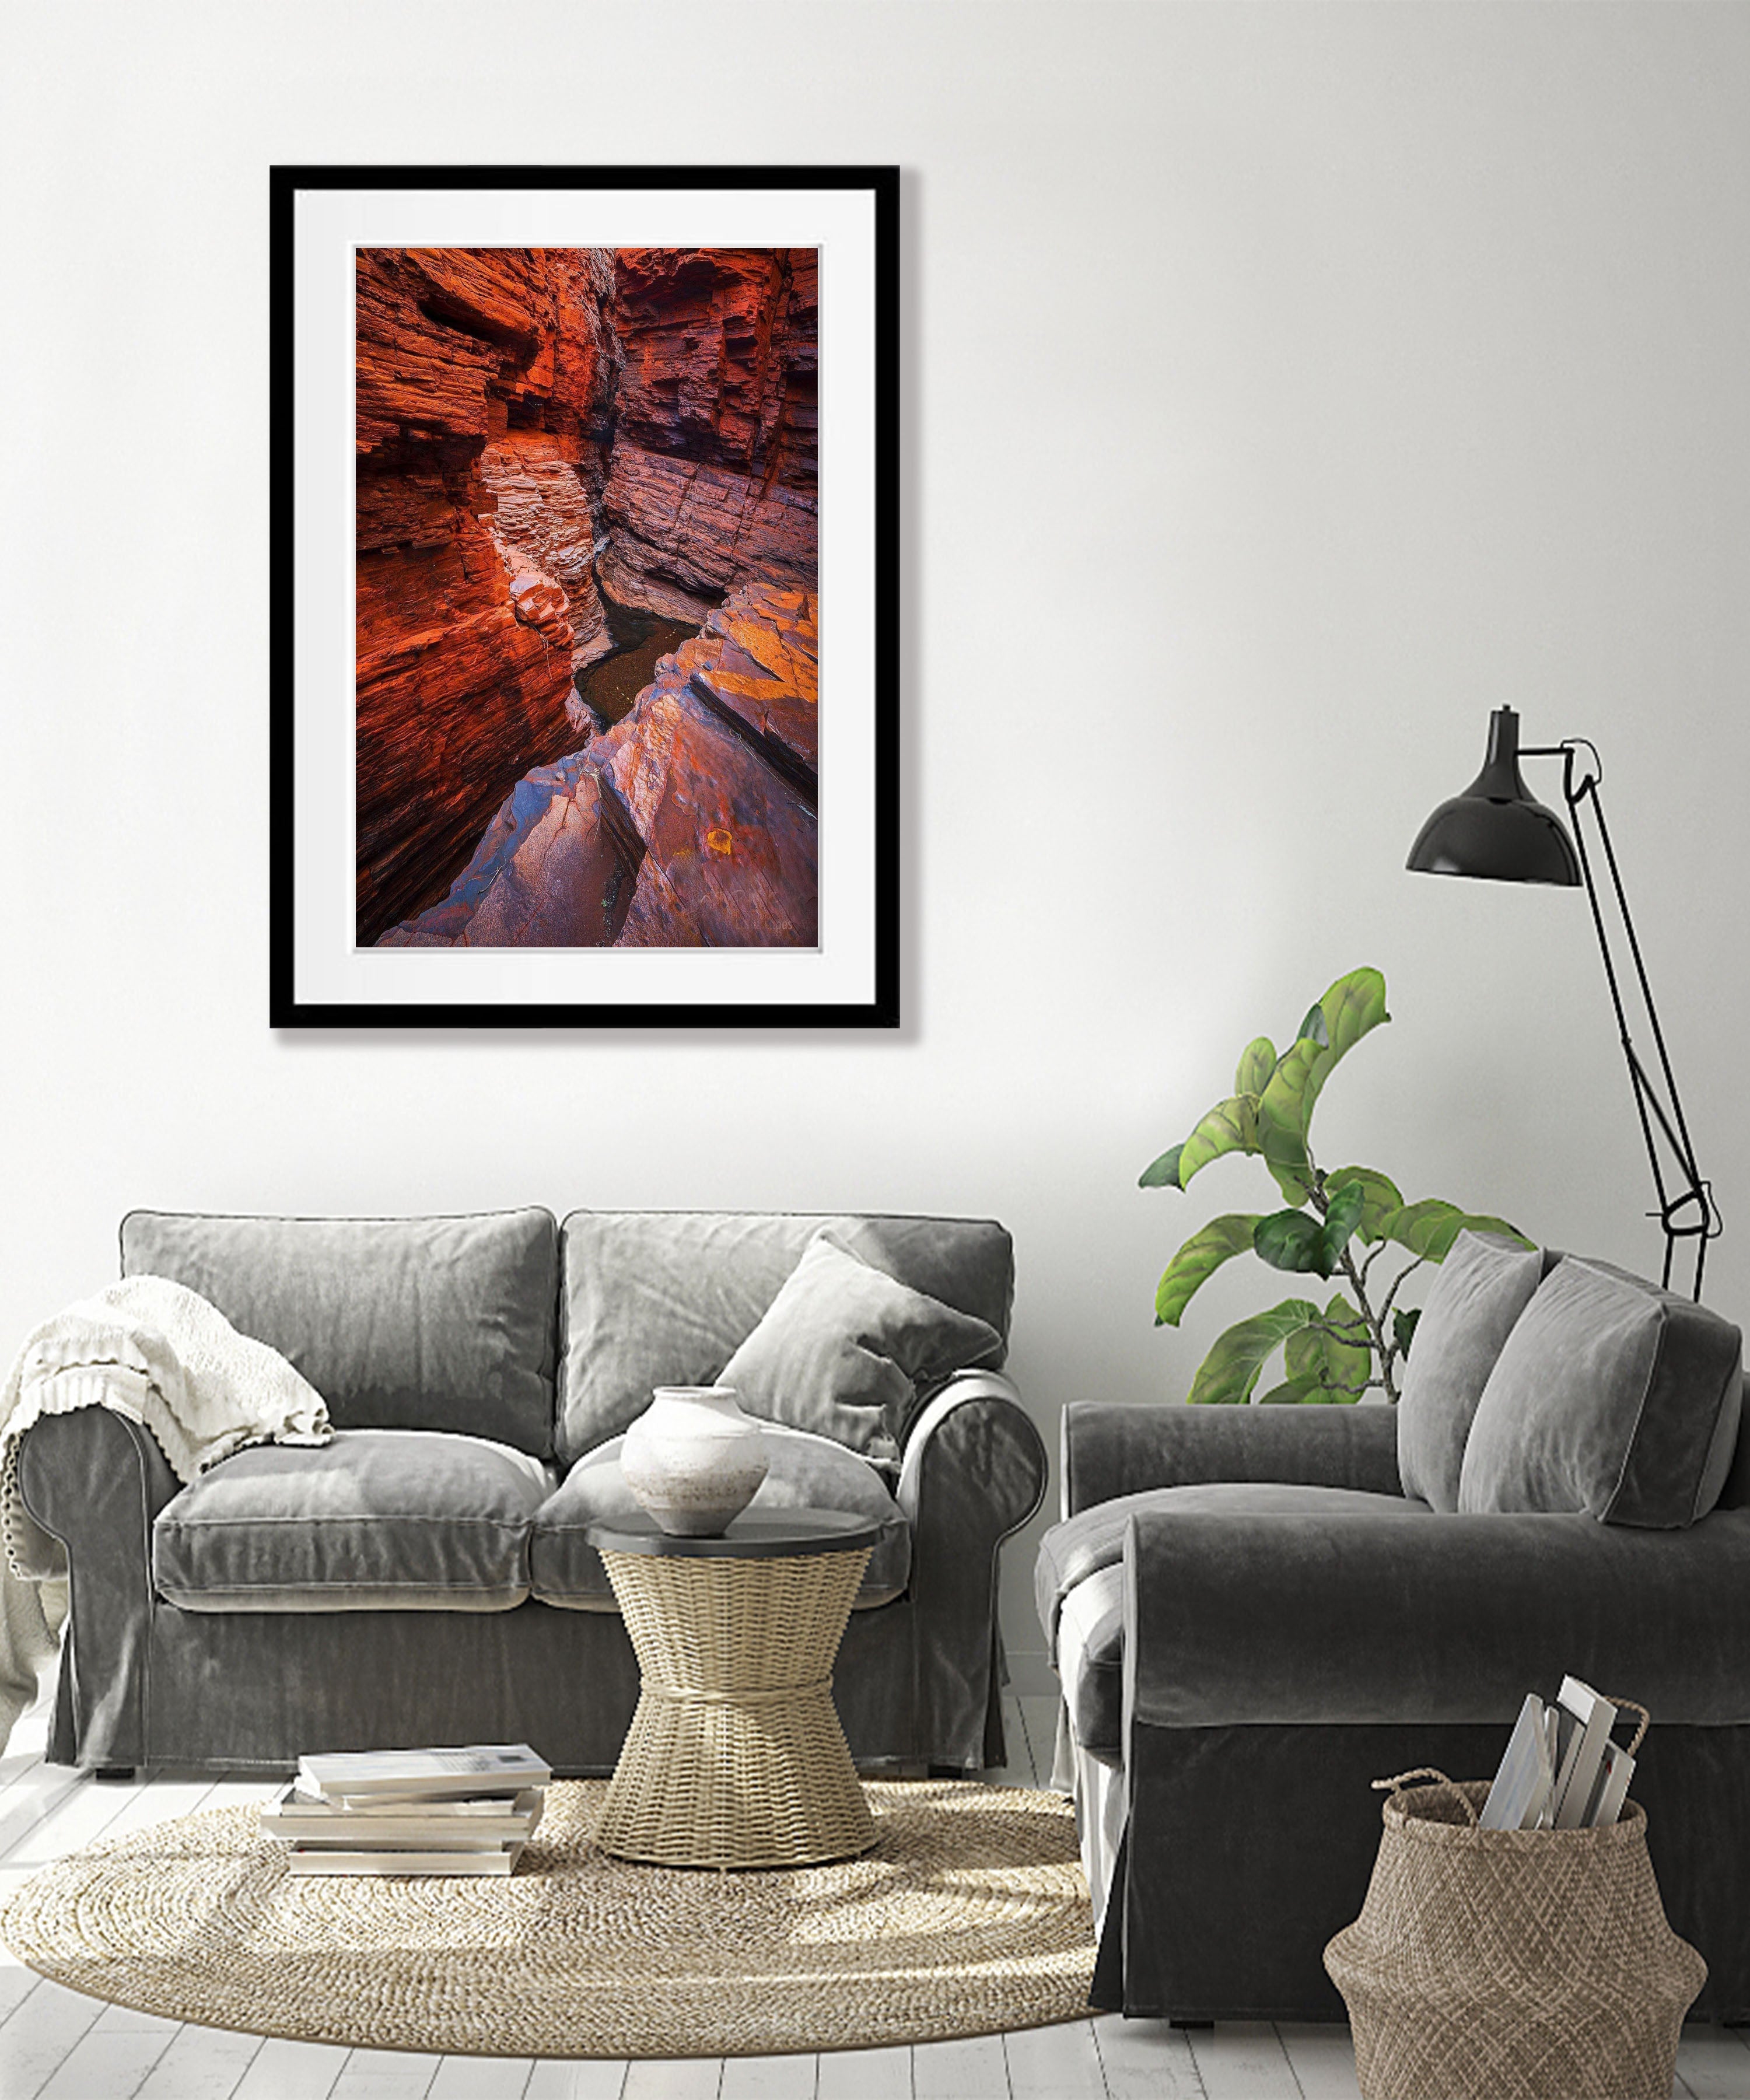 Weano Gorge - Karijini, The Pilbara